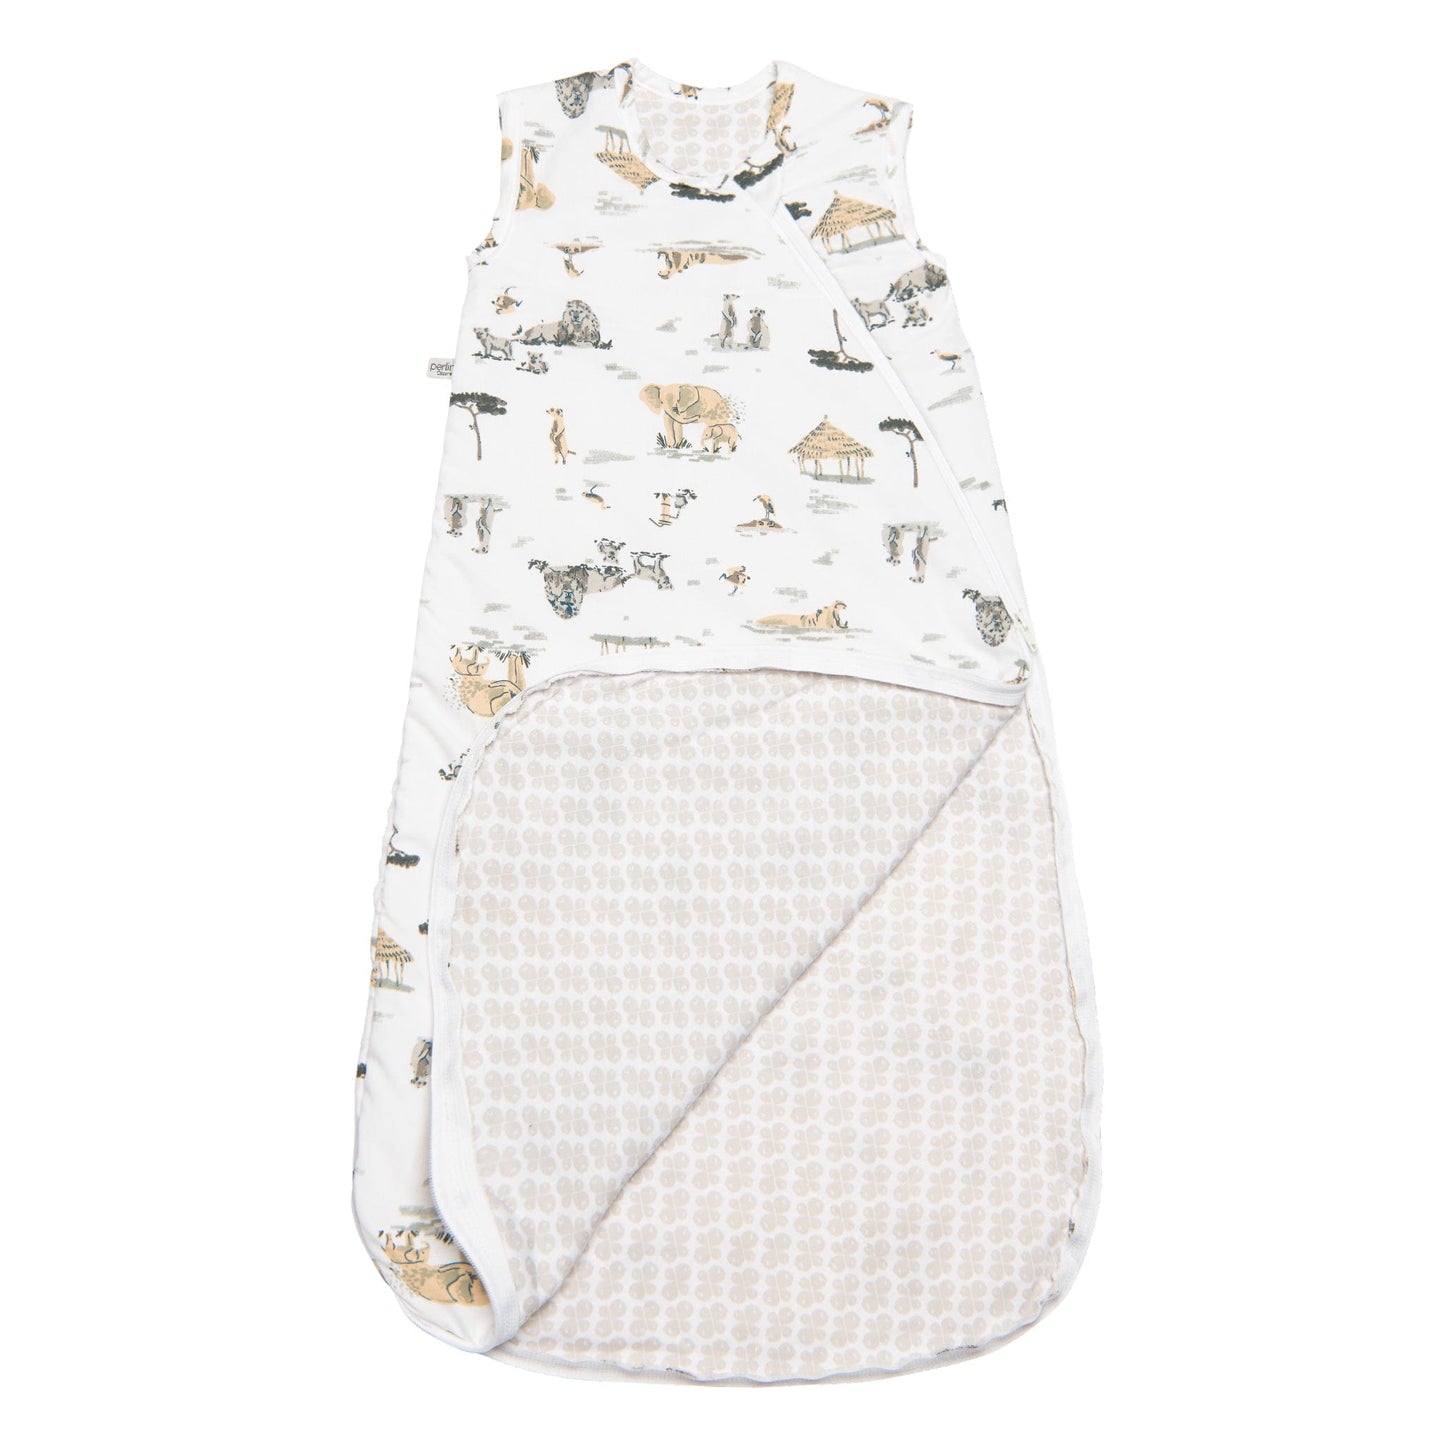 Woven cotton sleep sack - Safari (2.0 togs)